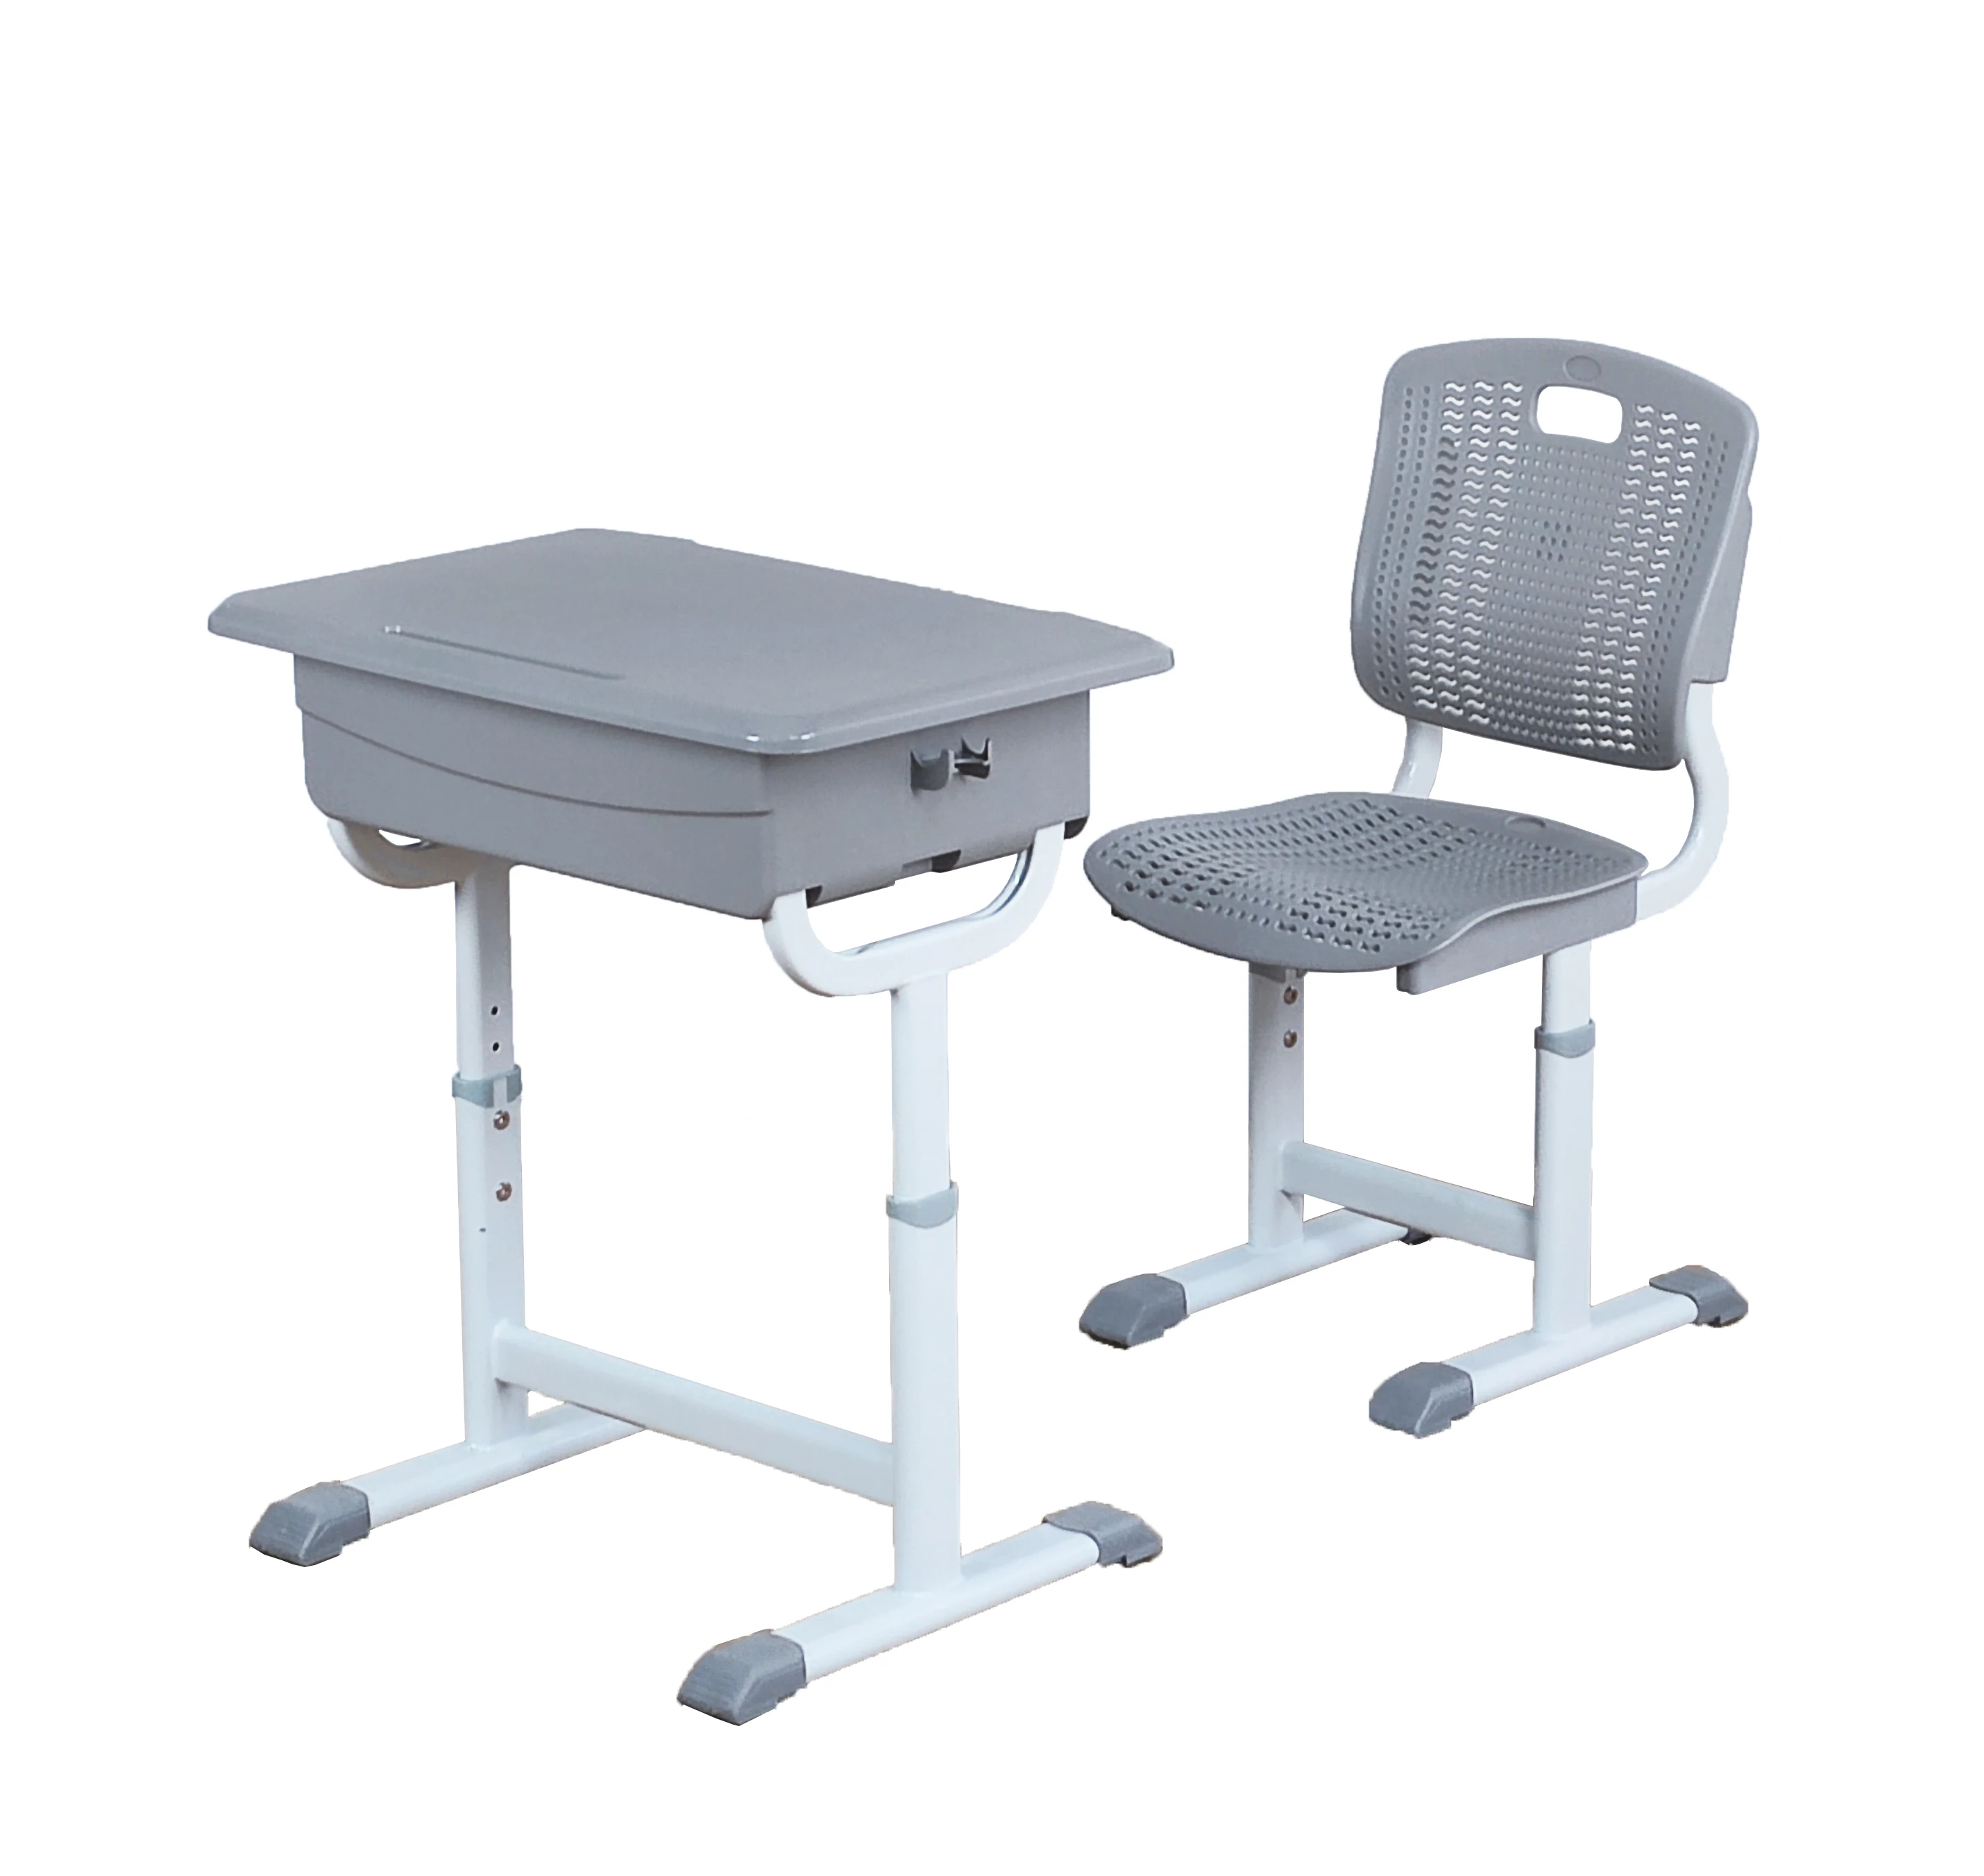 Эргономичная классная мебель, регулируемый школьный учебный стол, стул, пластиковый набор, класс E0, столы и стулья для начальной школы (1600234262823)